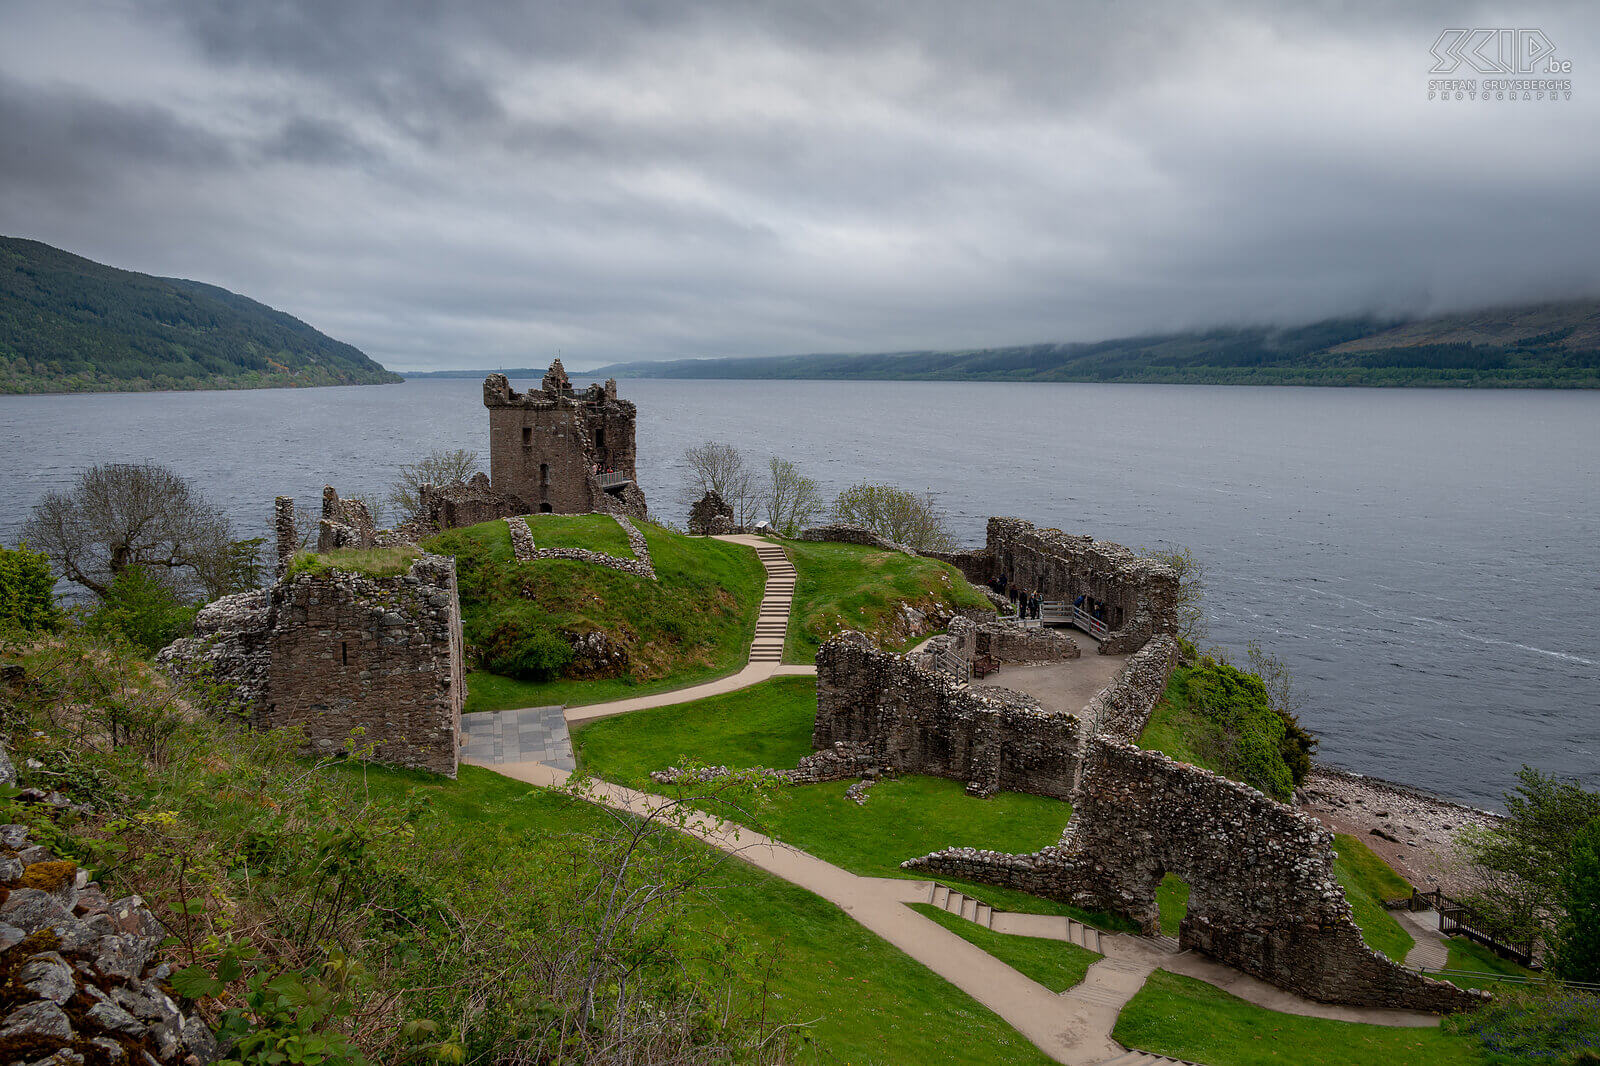 Loch Ness - Urquhart Castle Aan de westelijke oever van het meest beroemde meer van Schotland Loch Ness ligt een van de grootste kastelen van Schotland, Urquhart Castle. Dit ooit zo indrukwekkende kasteel werd in 1308 gebouwd en kende vele conflicten. De controle over het kasteel ging heen en weer tussen de Schotten en de Engelsen tijdens de Onafhankelijkheidsoorlogen. Tegenwoordig kan je de iconische ruïne uit de middeleeuwen bezoeken. Stefan Cruysberghs